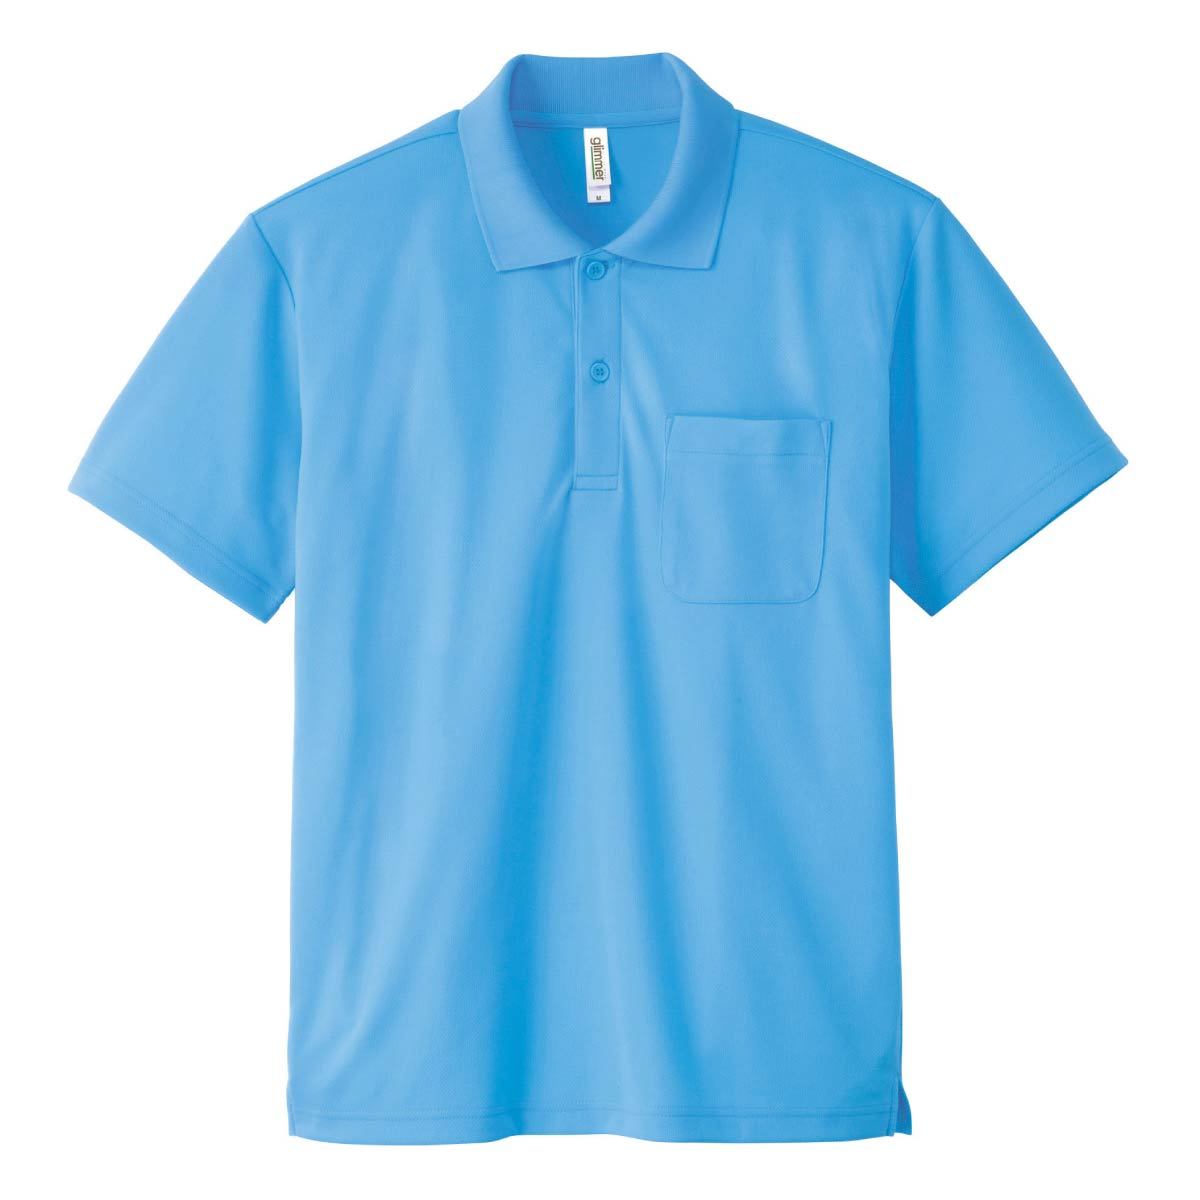 メンズ レディース サイズ ポロシャツ 半袖 ドライポロシャツ 4.4